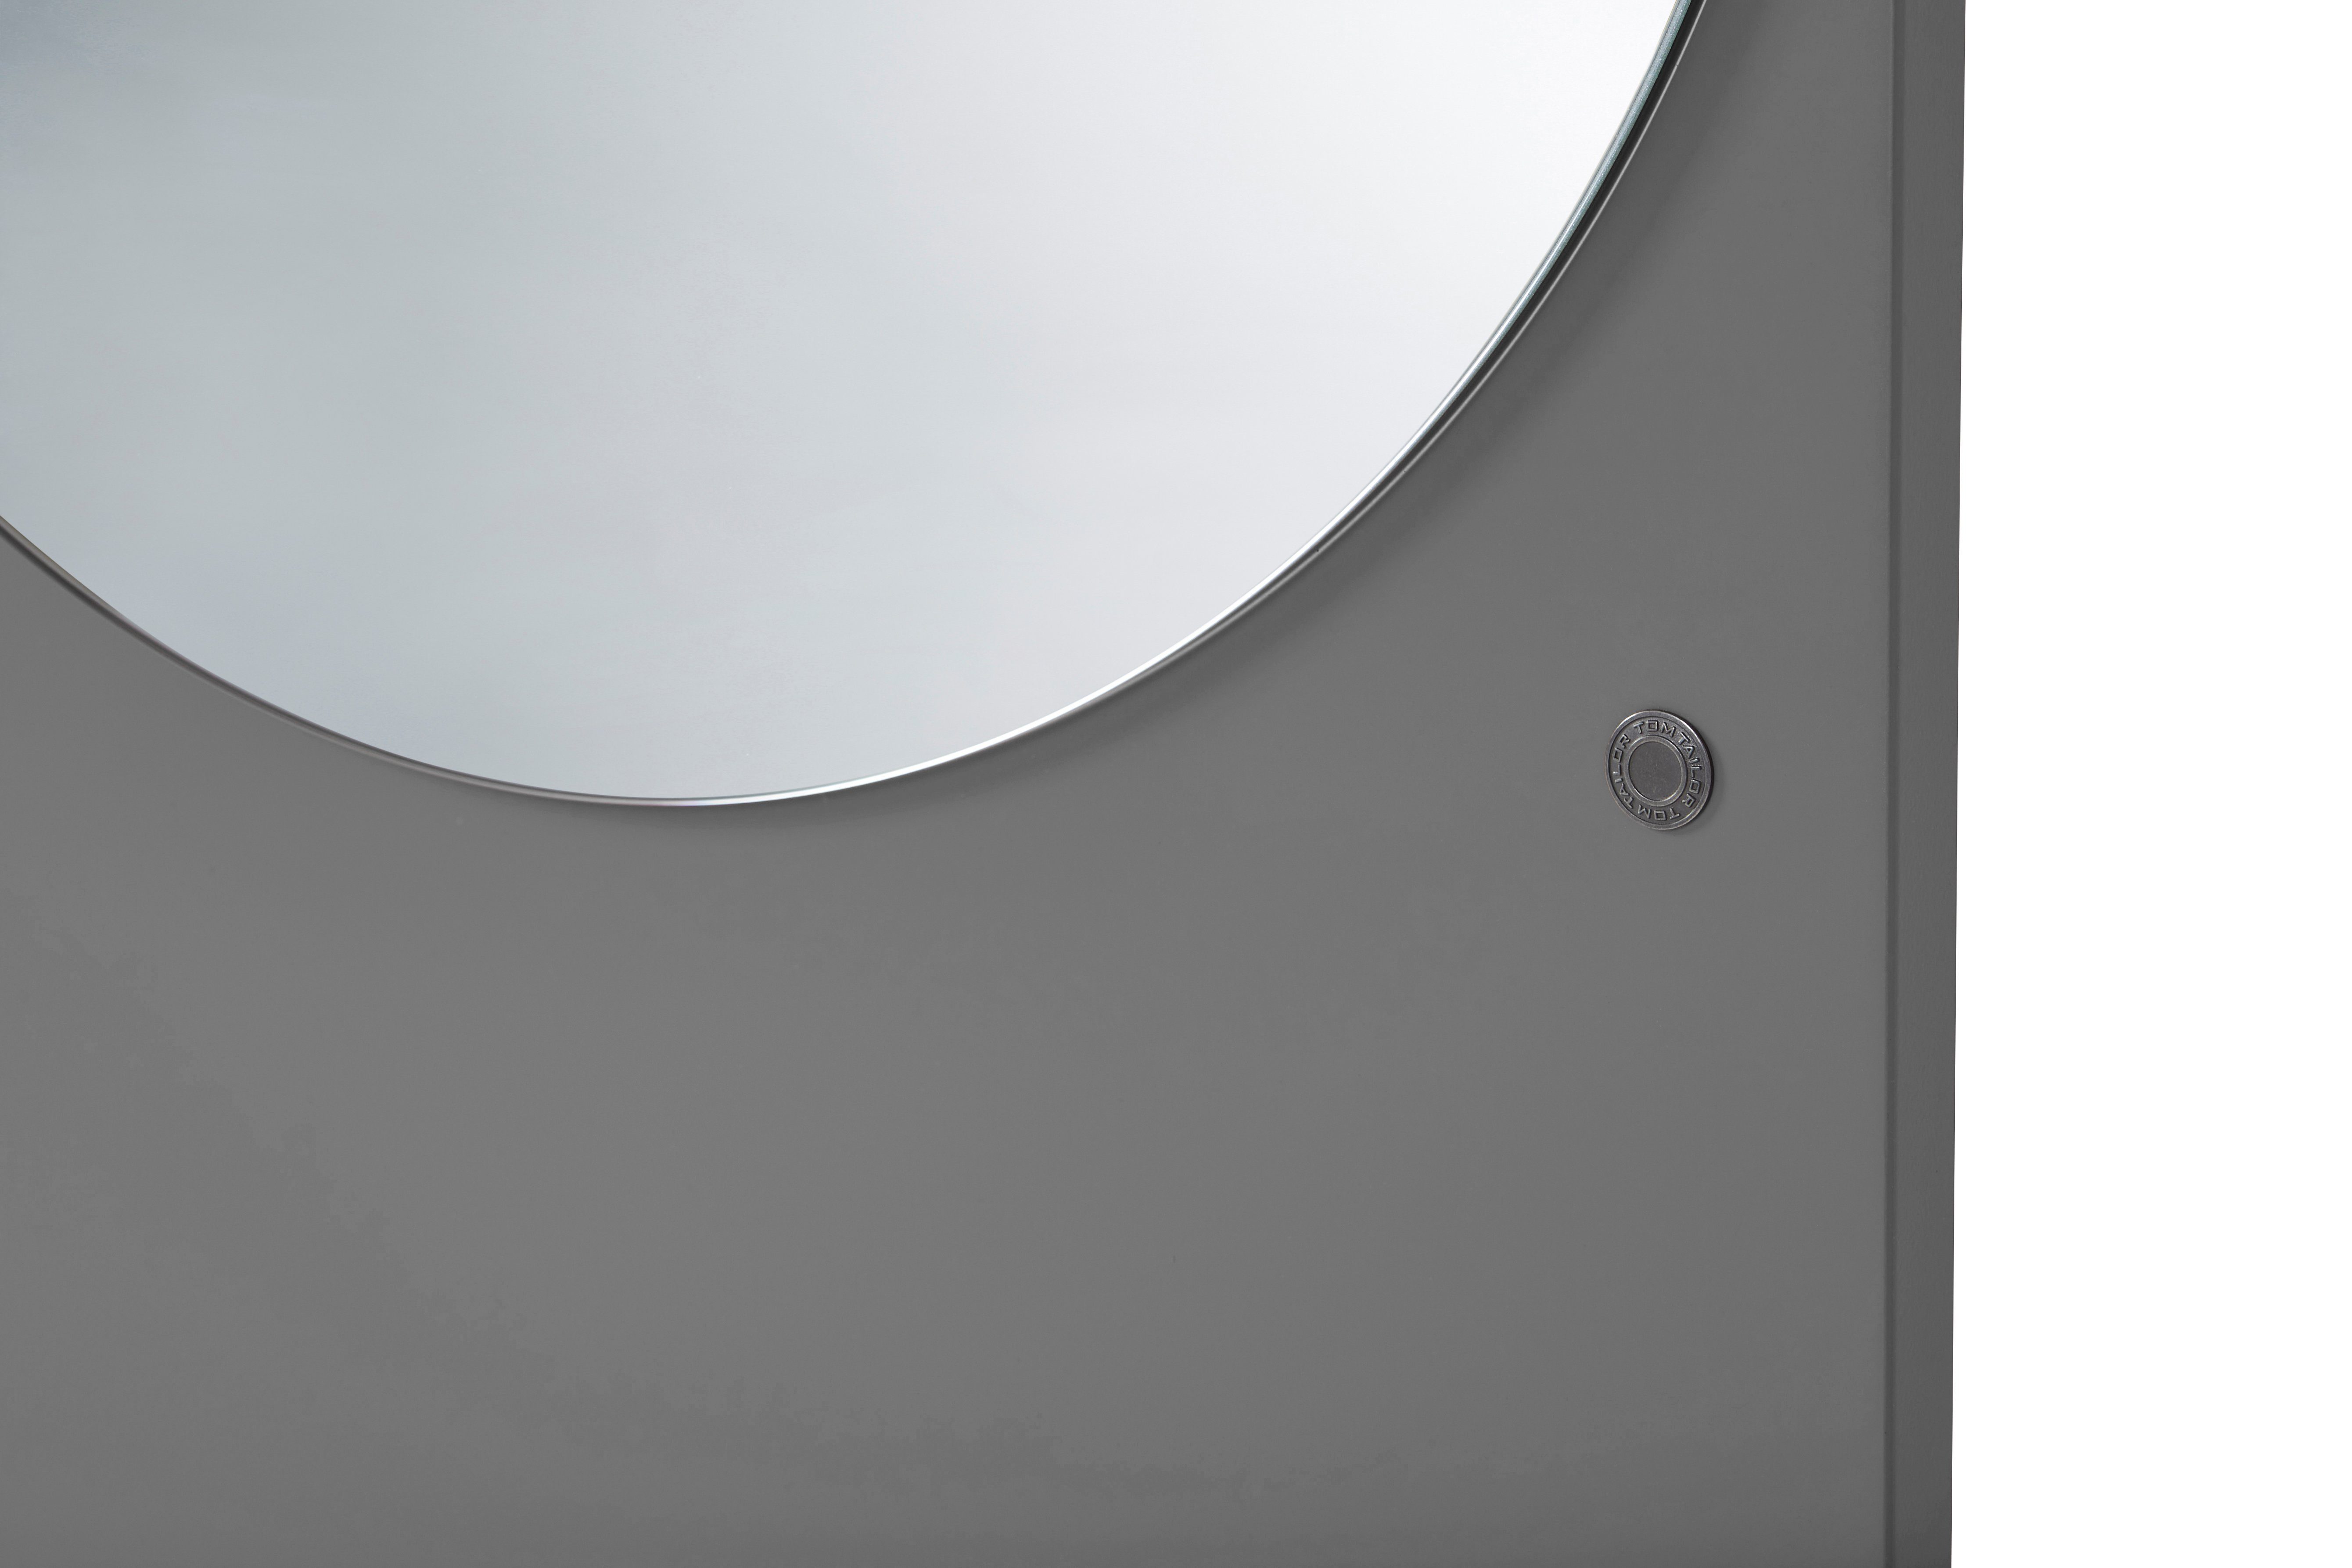 TAILOR besonderer in - grey012 Standspiegel Wandlehnender & Spiegel farbiges Highlight Form MIRROR in COLOR hochwertig HOME vielen TOM schönen Farben - lackiert,